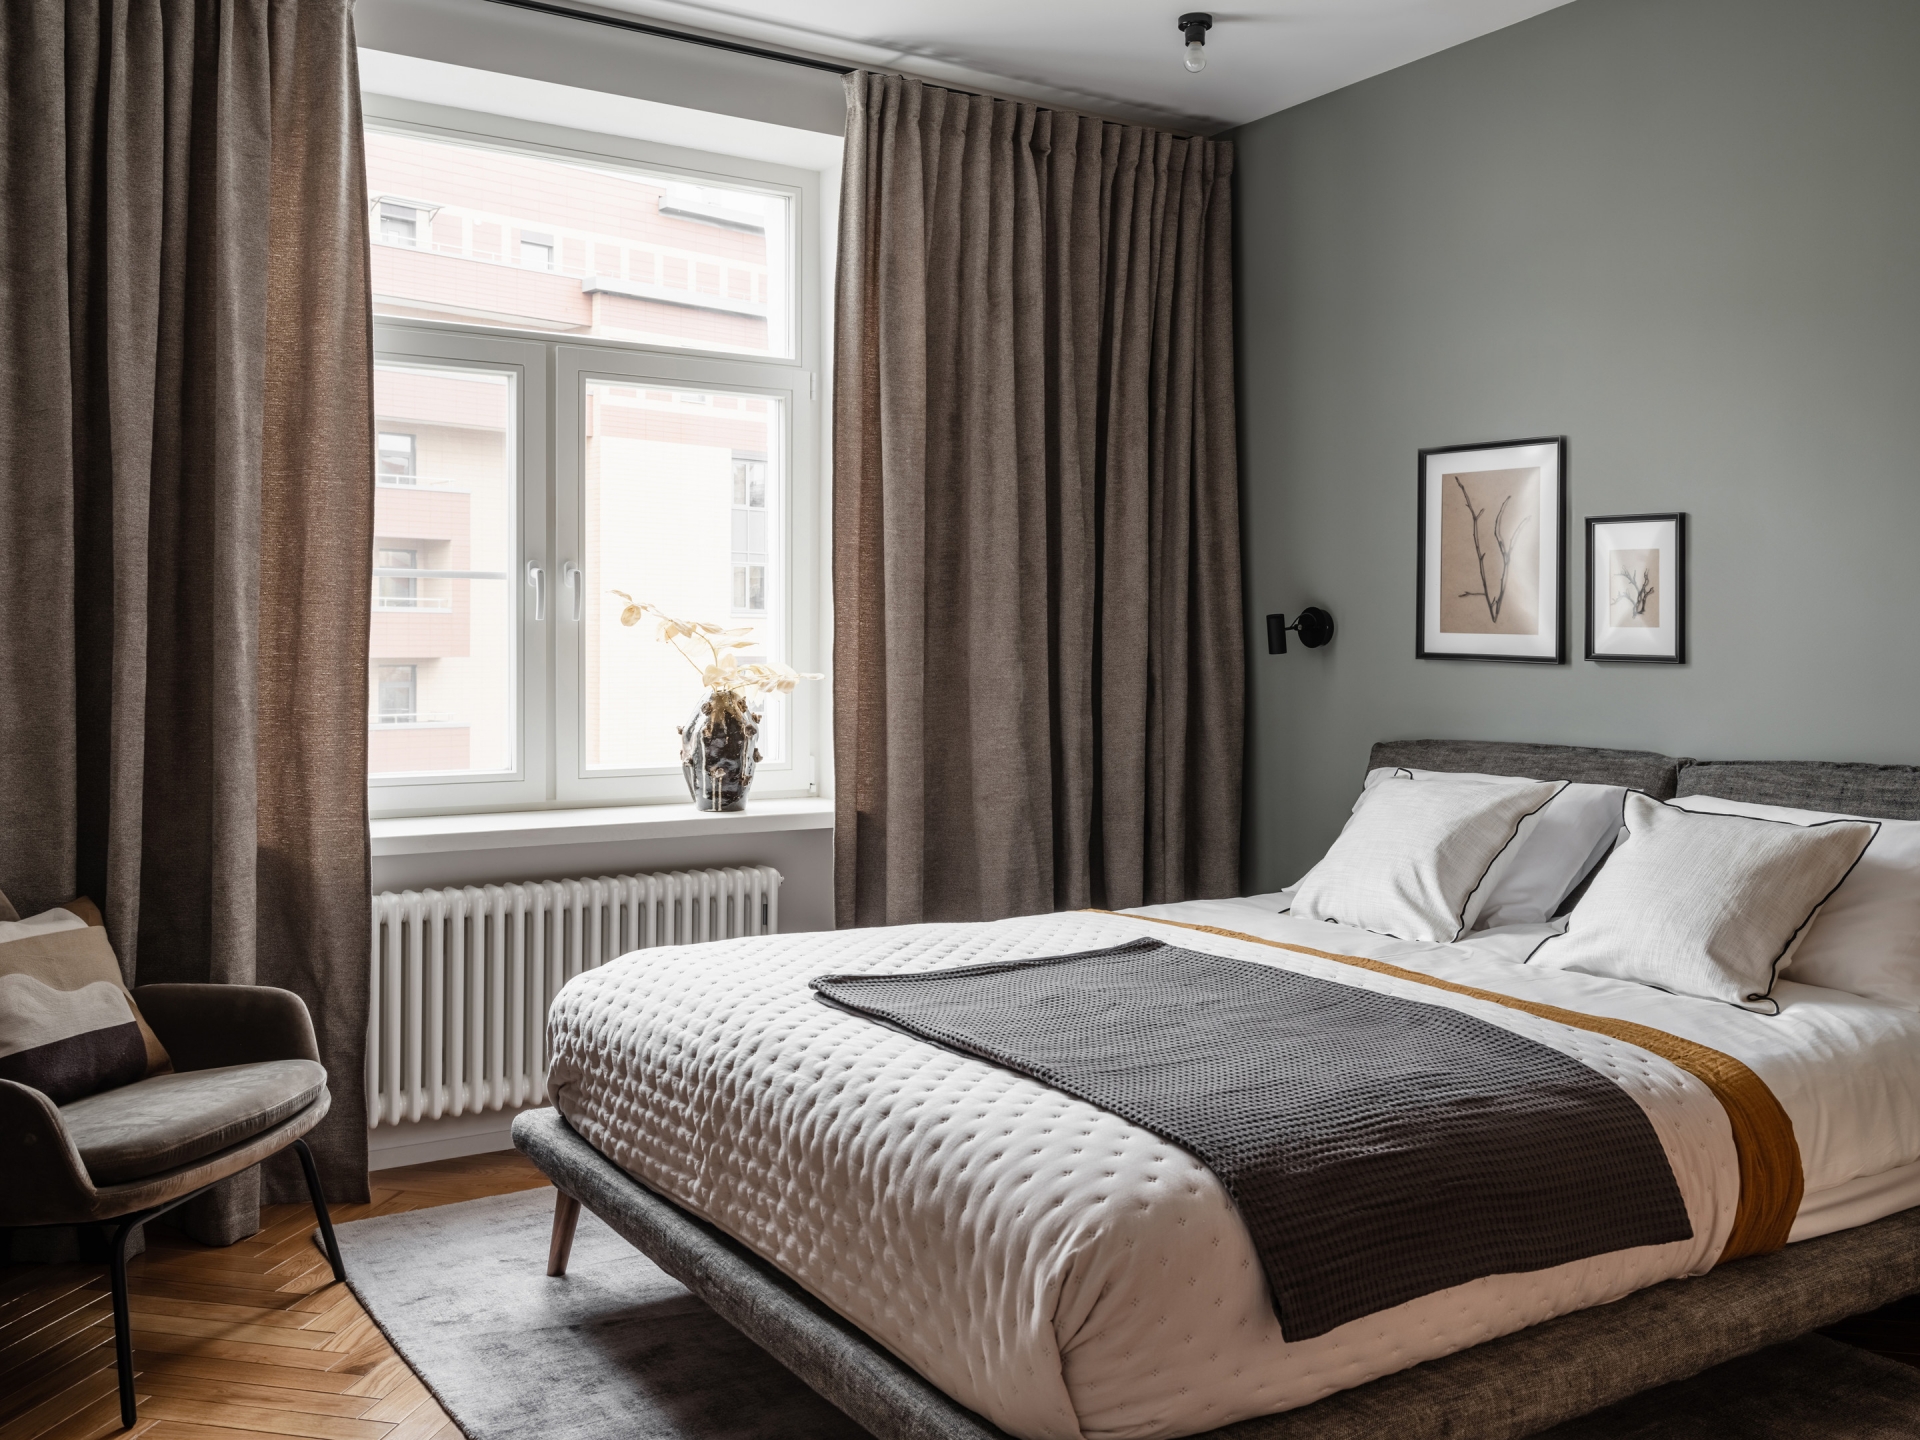 Phòng ngủ chính của bố mẹ sử dụng tường sơn màu xám ấm, rèm che dày dặn tạo sự riêng tư, bộ giường nệm chất lượng cao cho sự êm ái tuyệt đối.